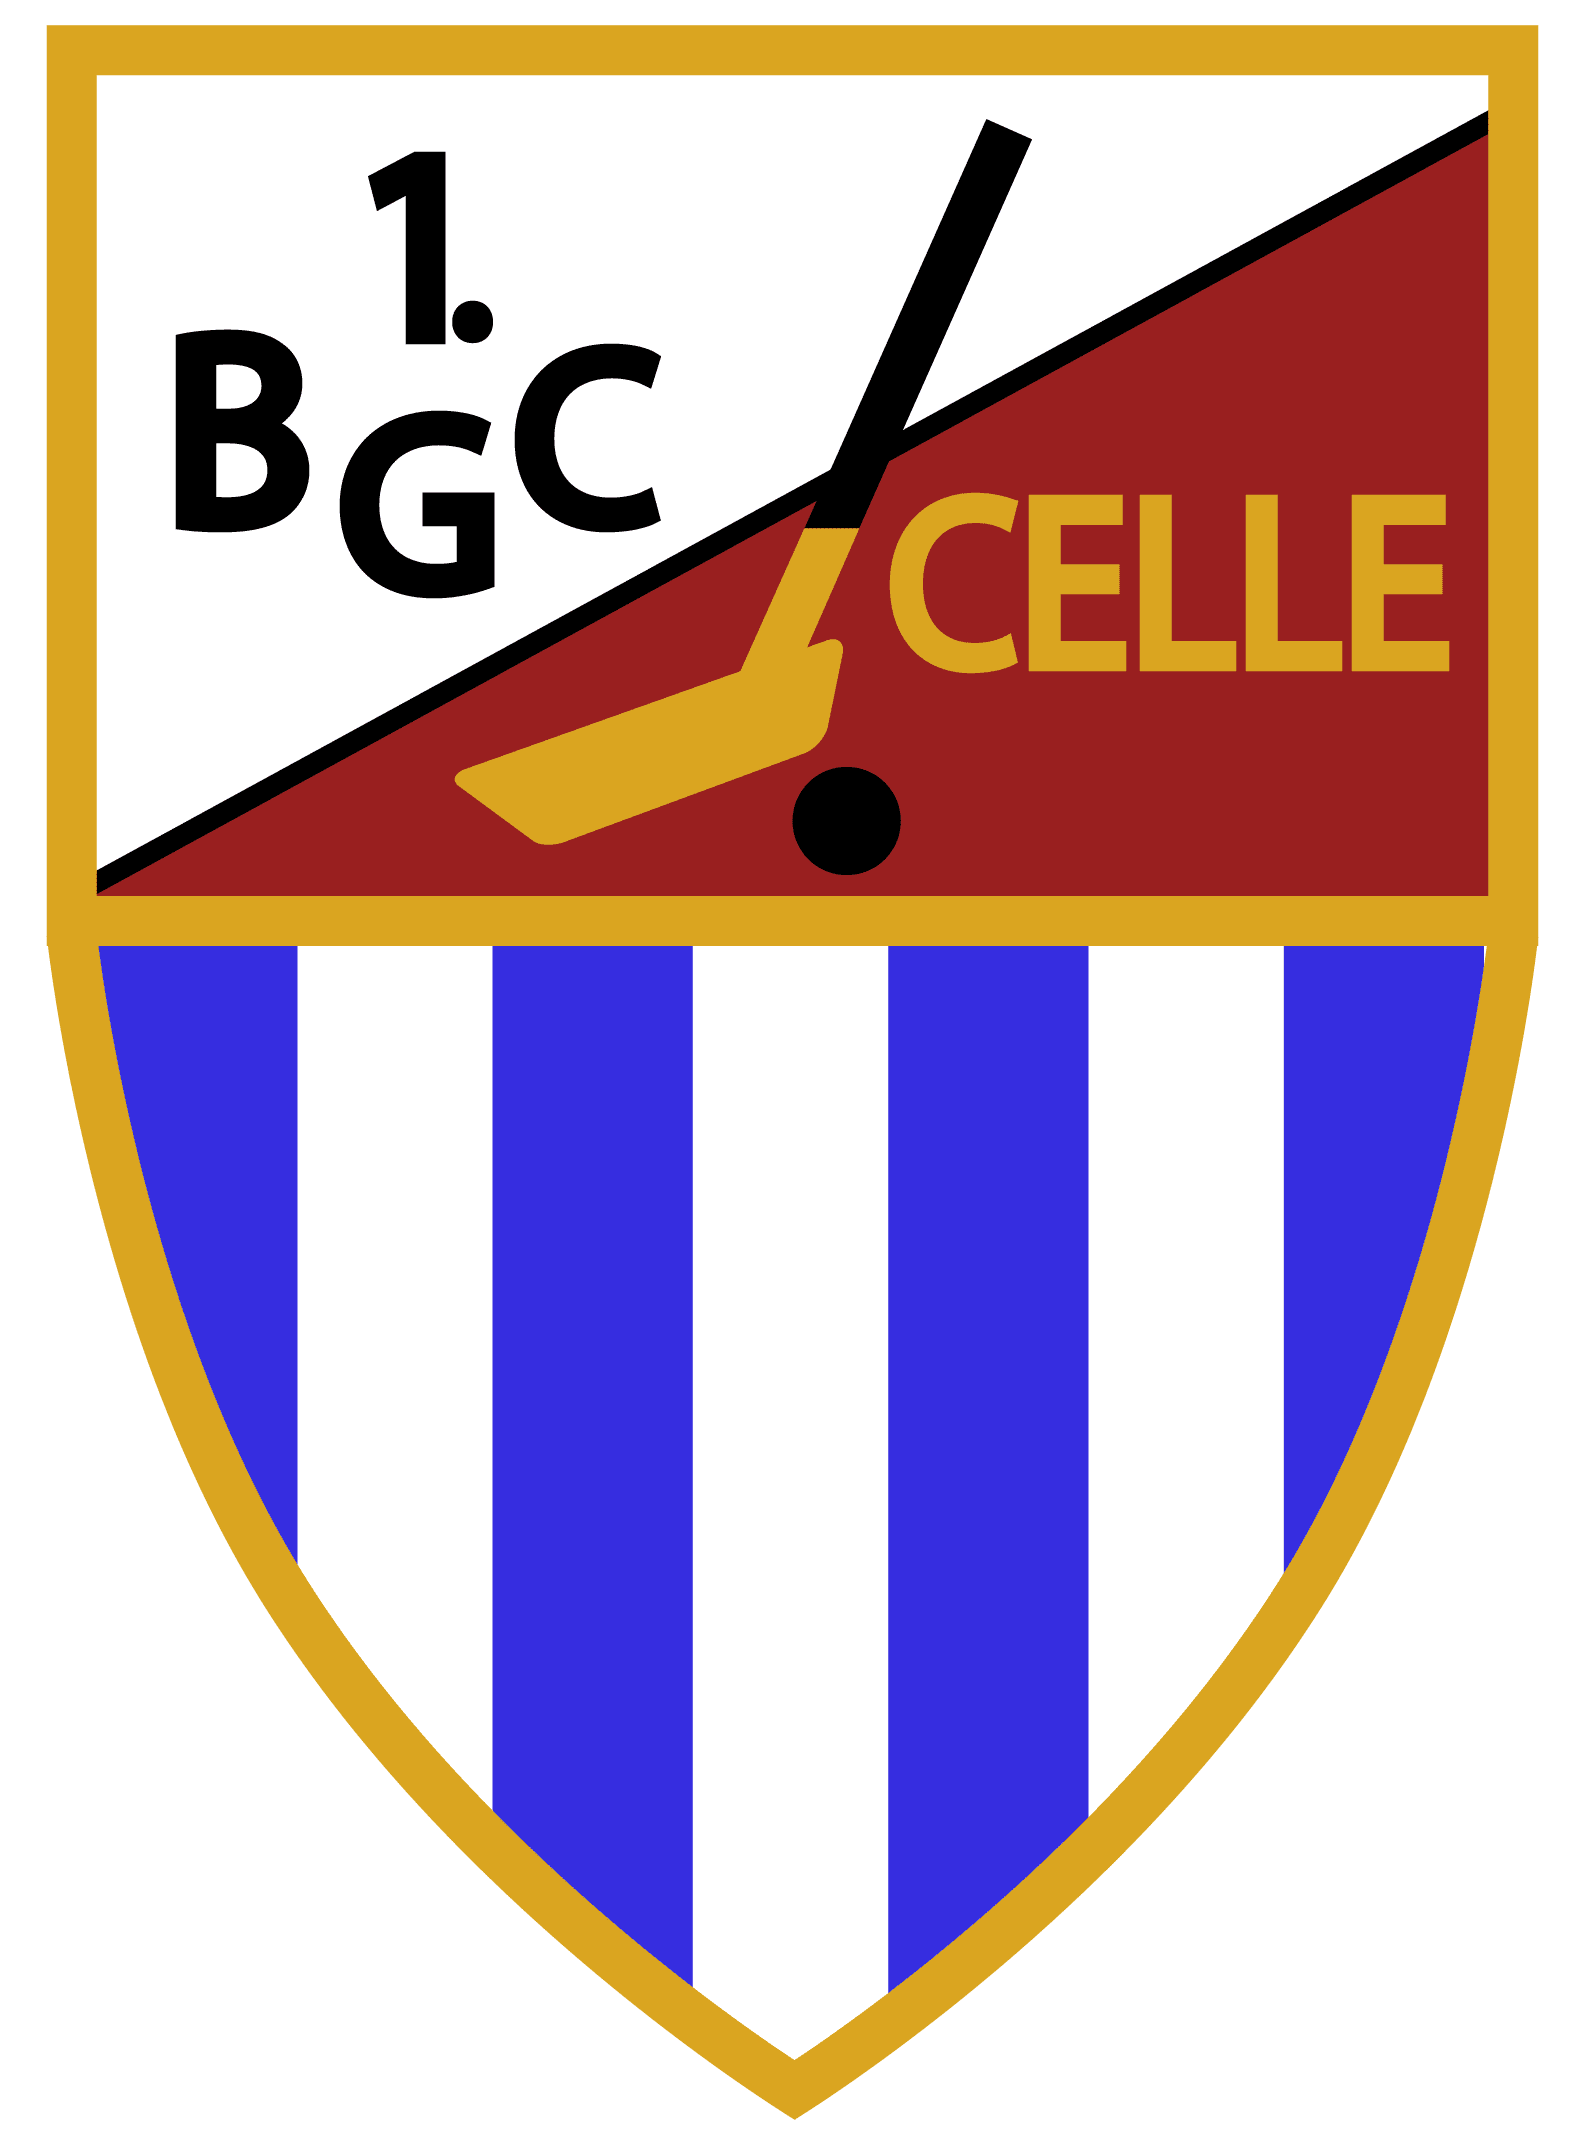 bgc-celle-logo